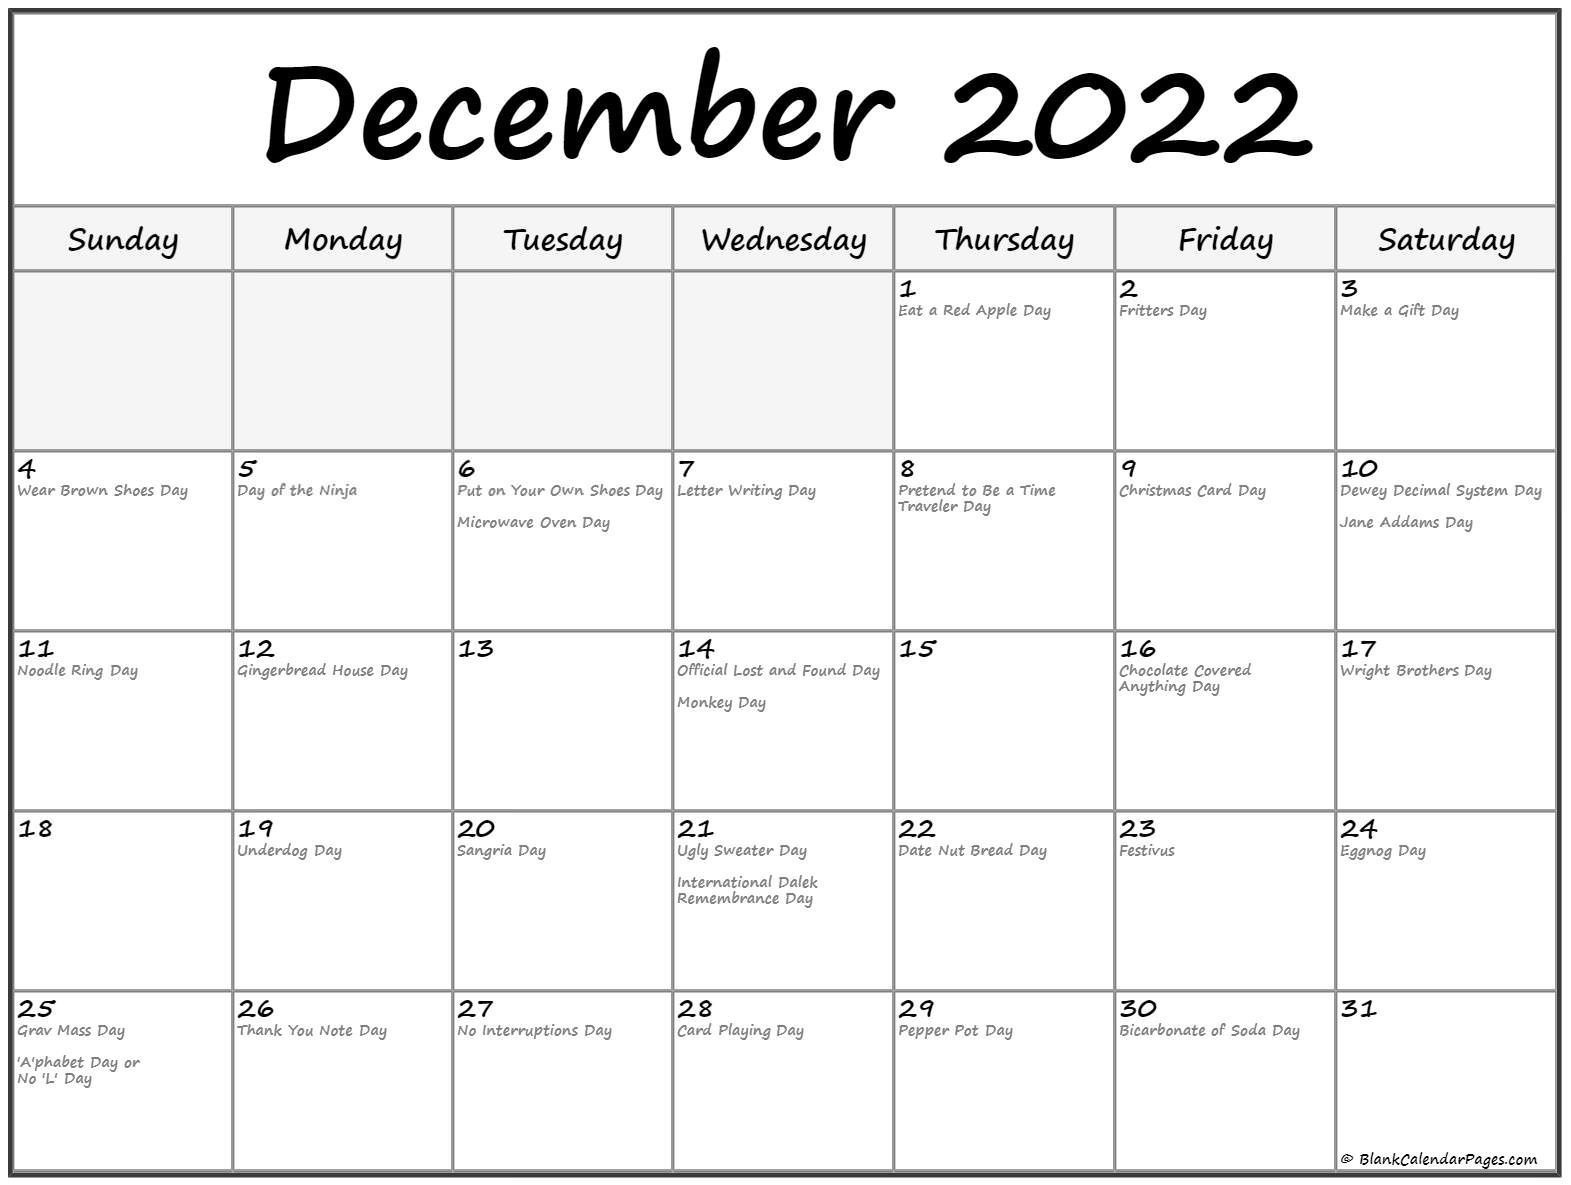 Get Calendar 2022 August Bank Holiday